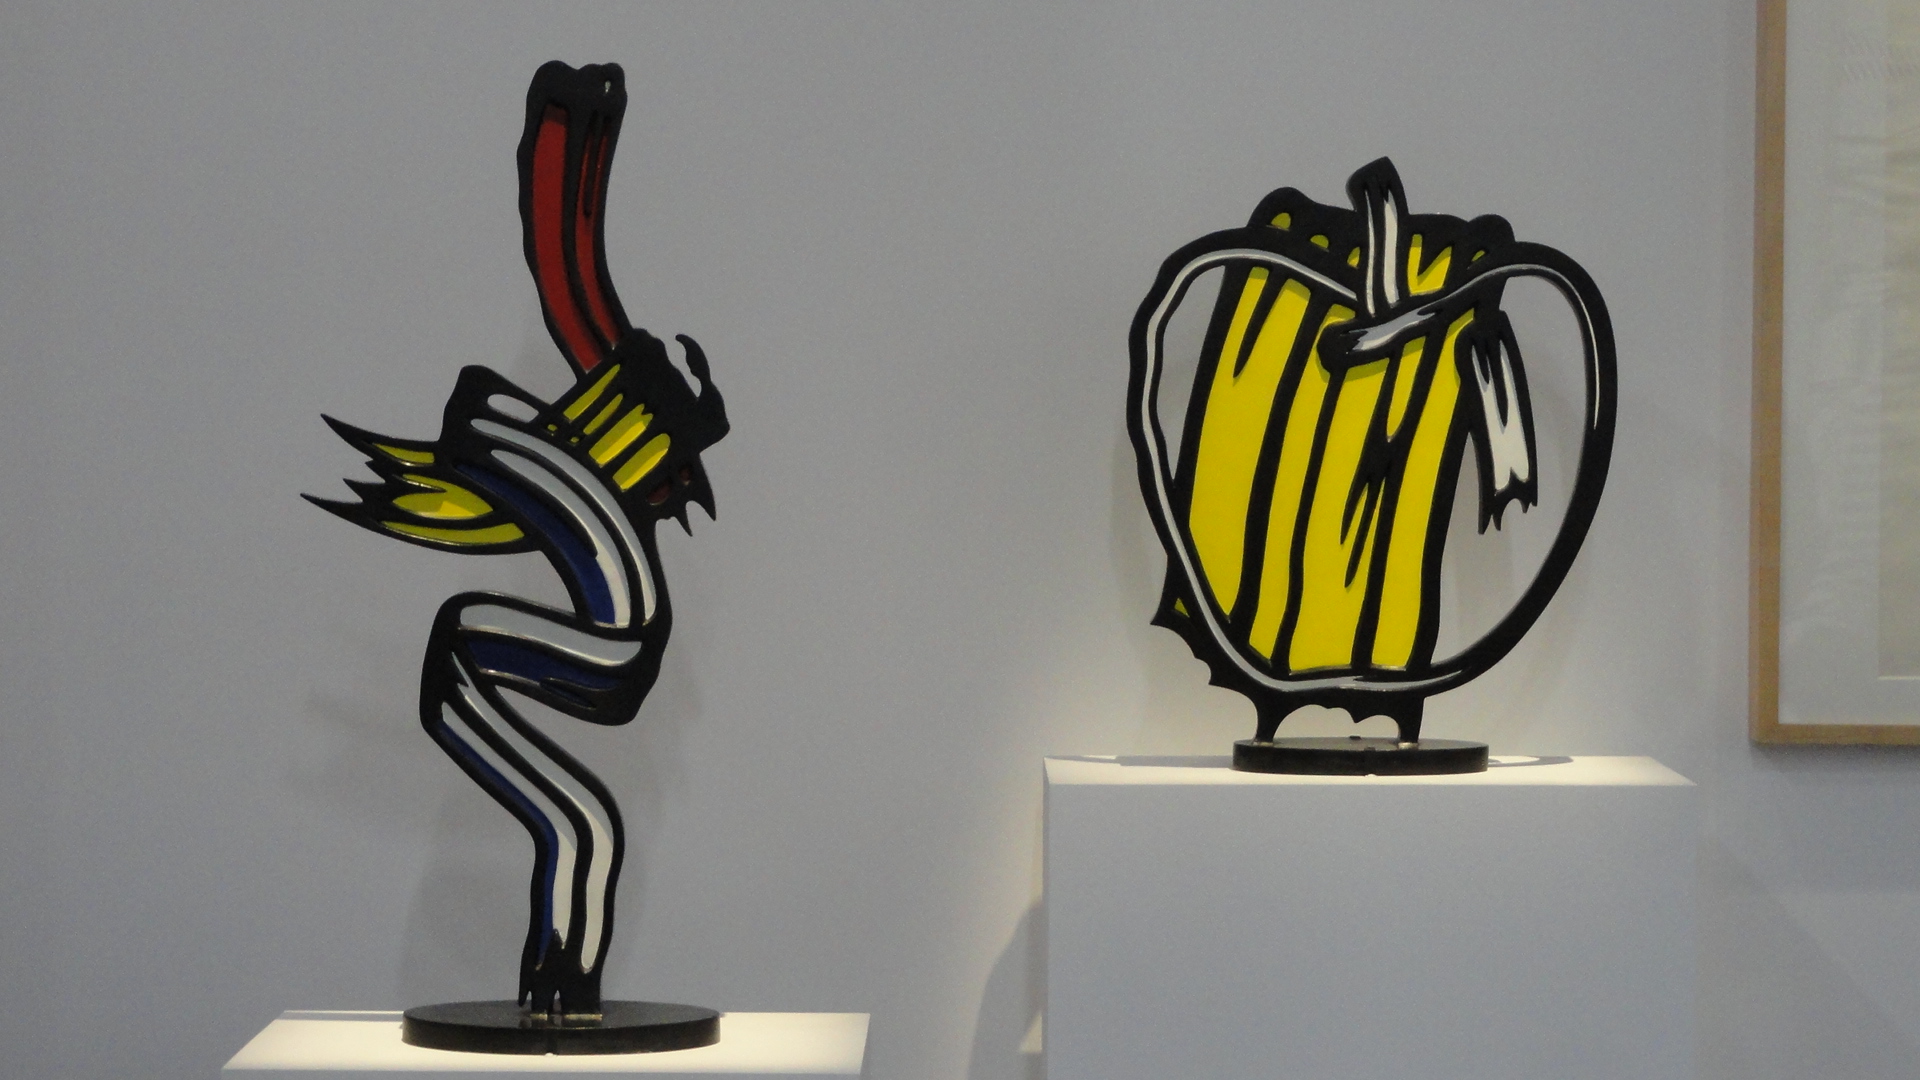 Rétrospective de Roy Lichtenstein, Centre Pompidou - Sculptures